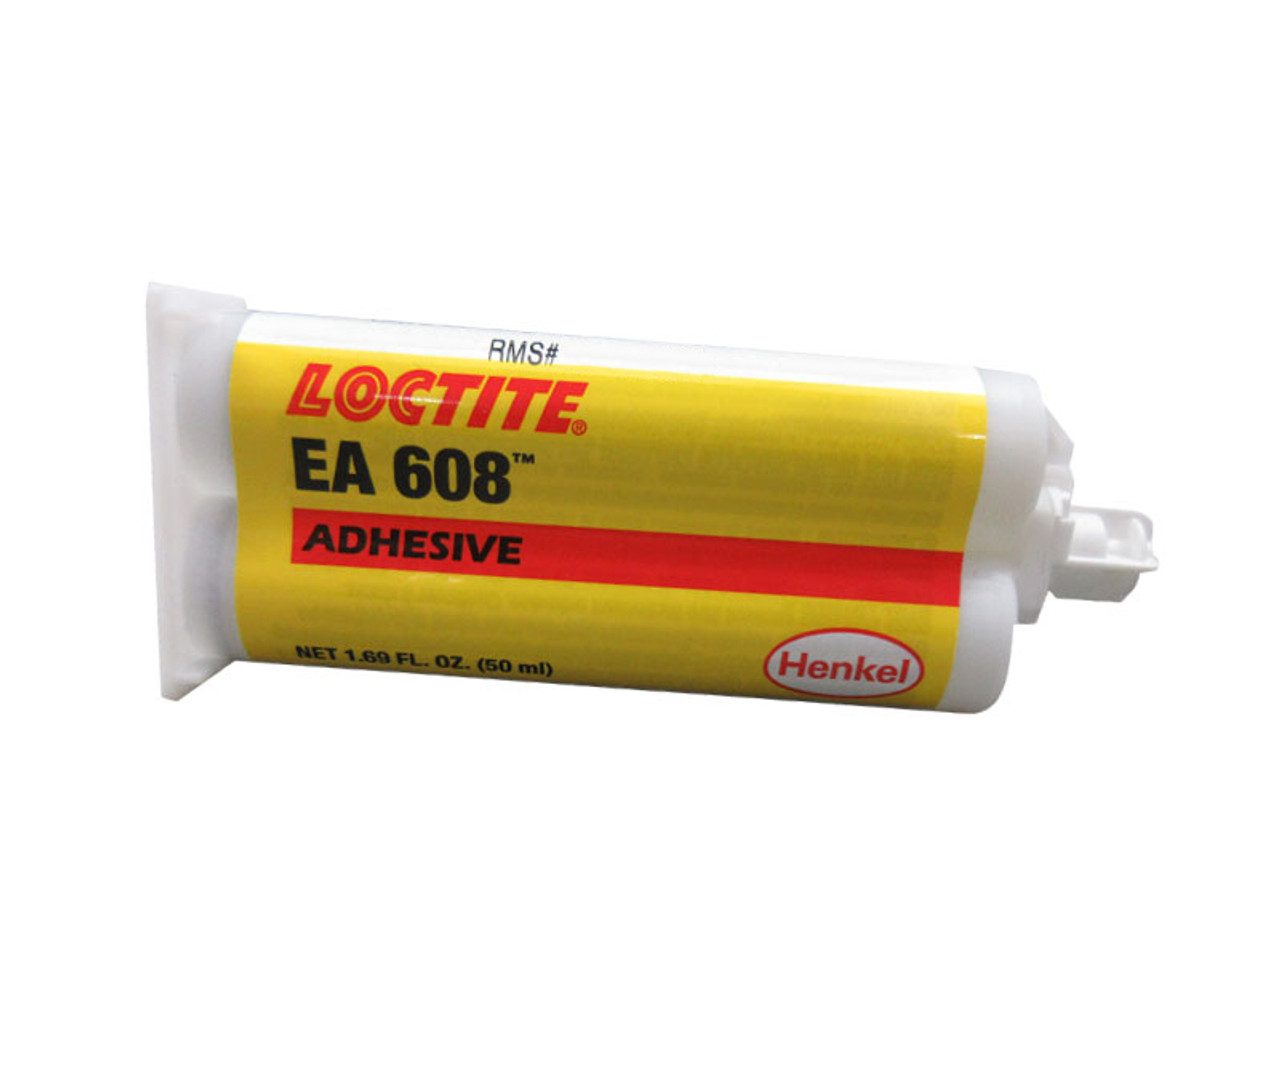 LOCTITE E-40HT Hysol Epoxy Structural Adhesive - 50ml cartridge